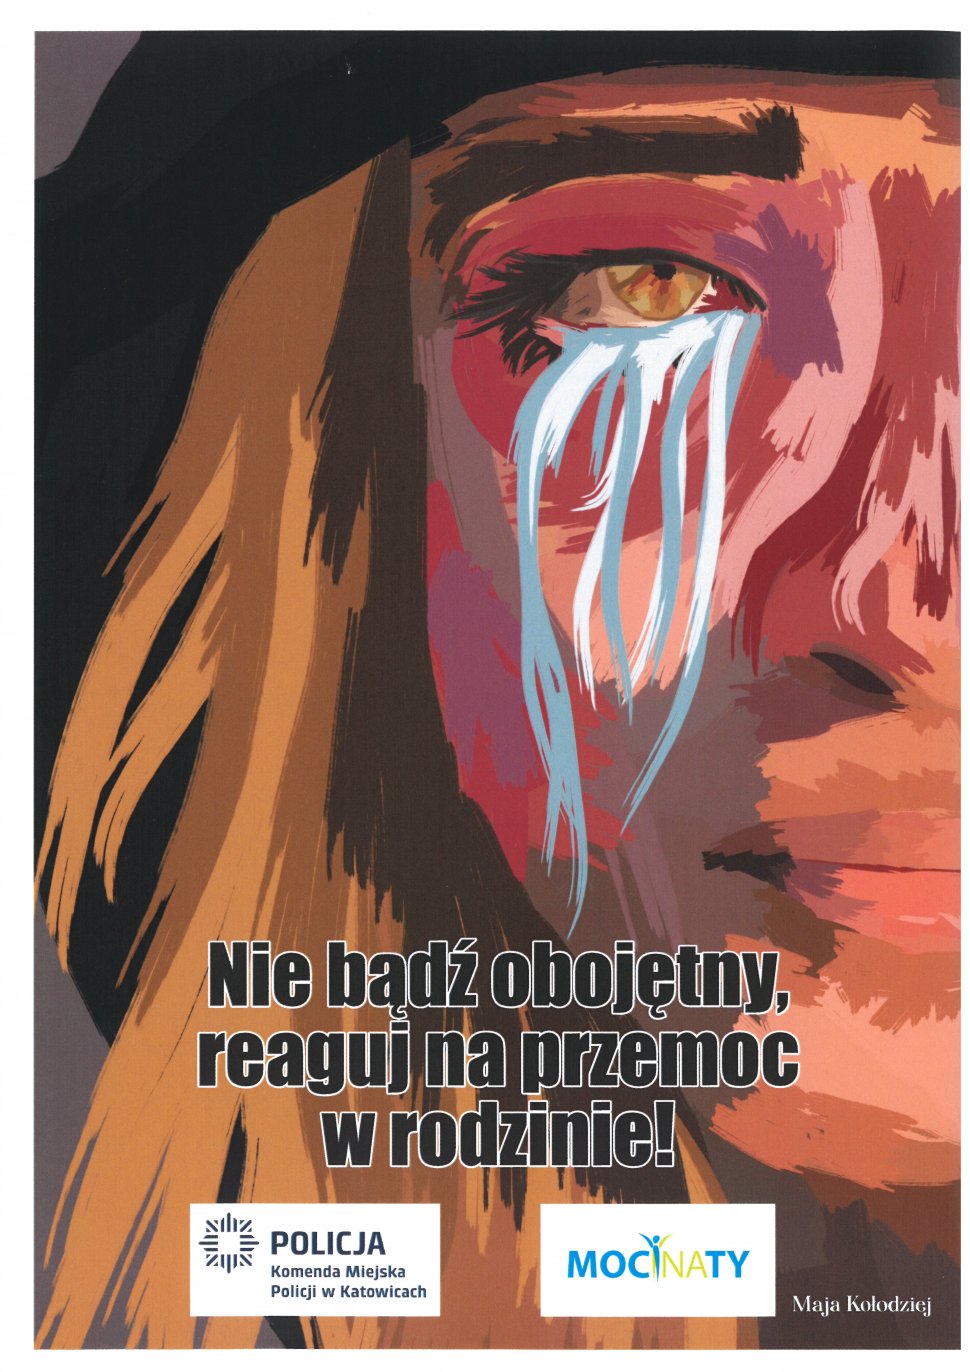 zdjęcie kolorowe: plakat graficzny przedstawiający lewą część twarzy kobiety z blond włosami, której z oka płyną łzy i napis Nie bądź obojętny, reaguj na przemoc w rodzinie! 